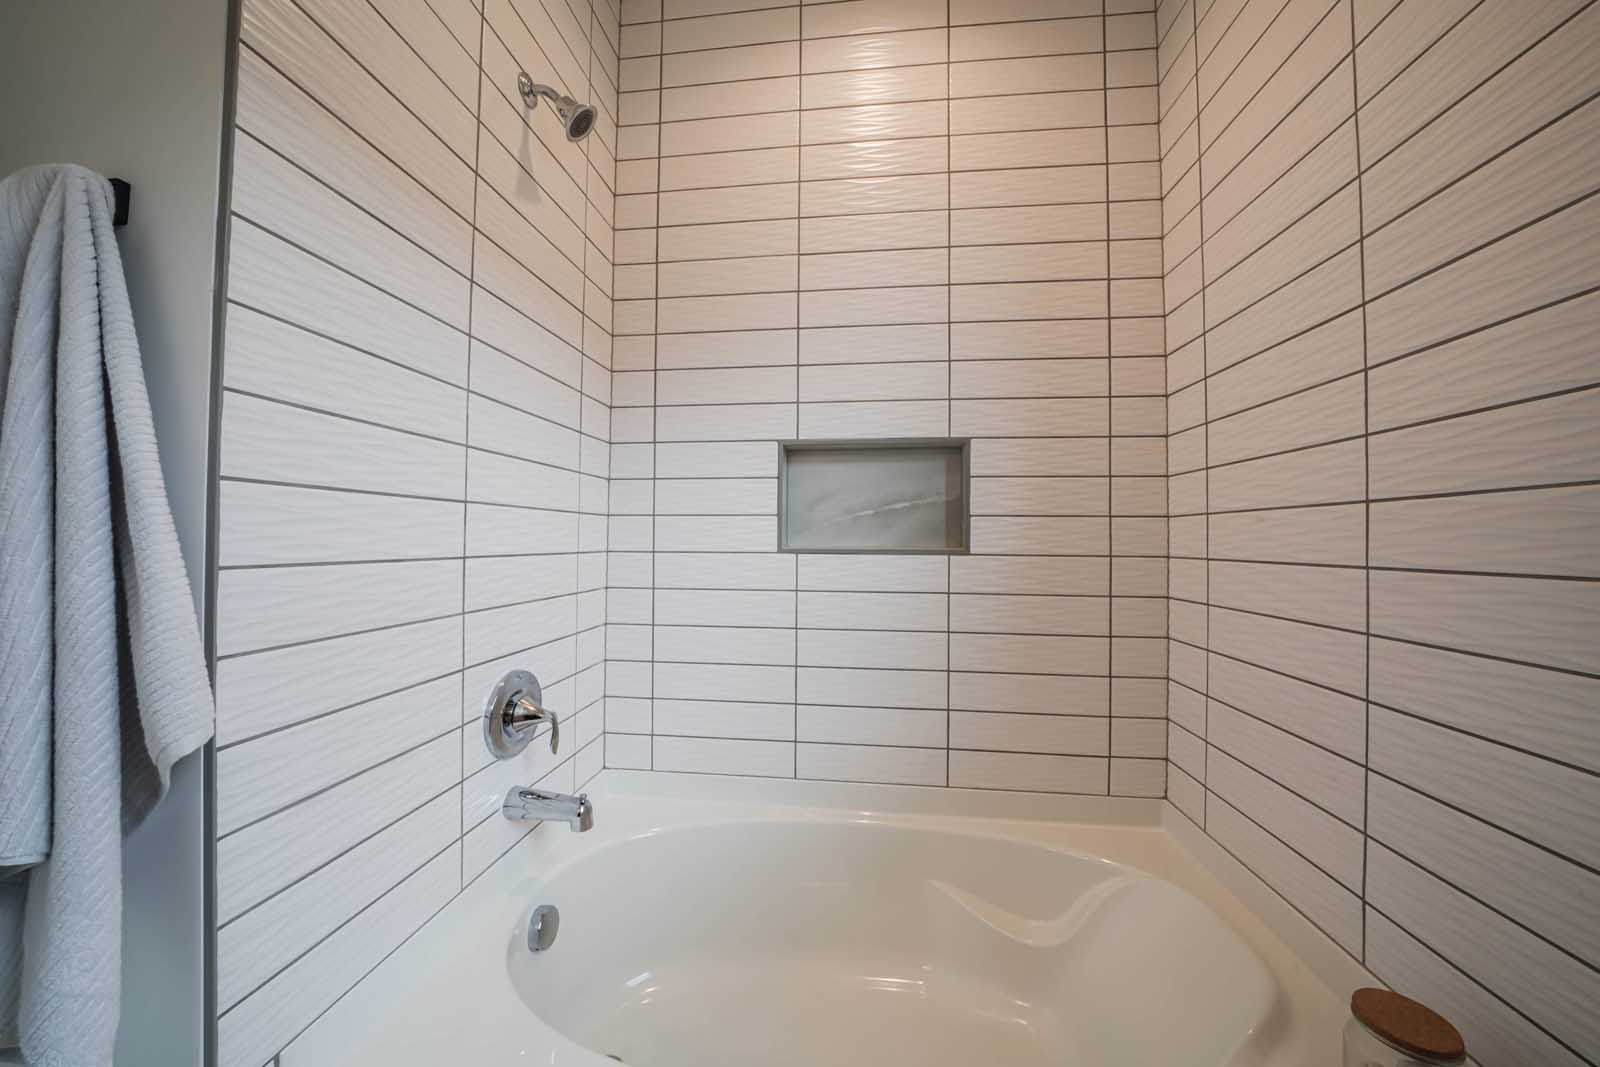 Design Homes Lot 175 bathroom shower